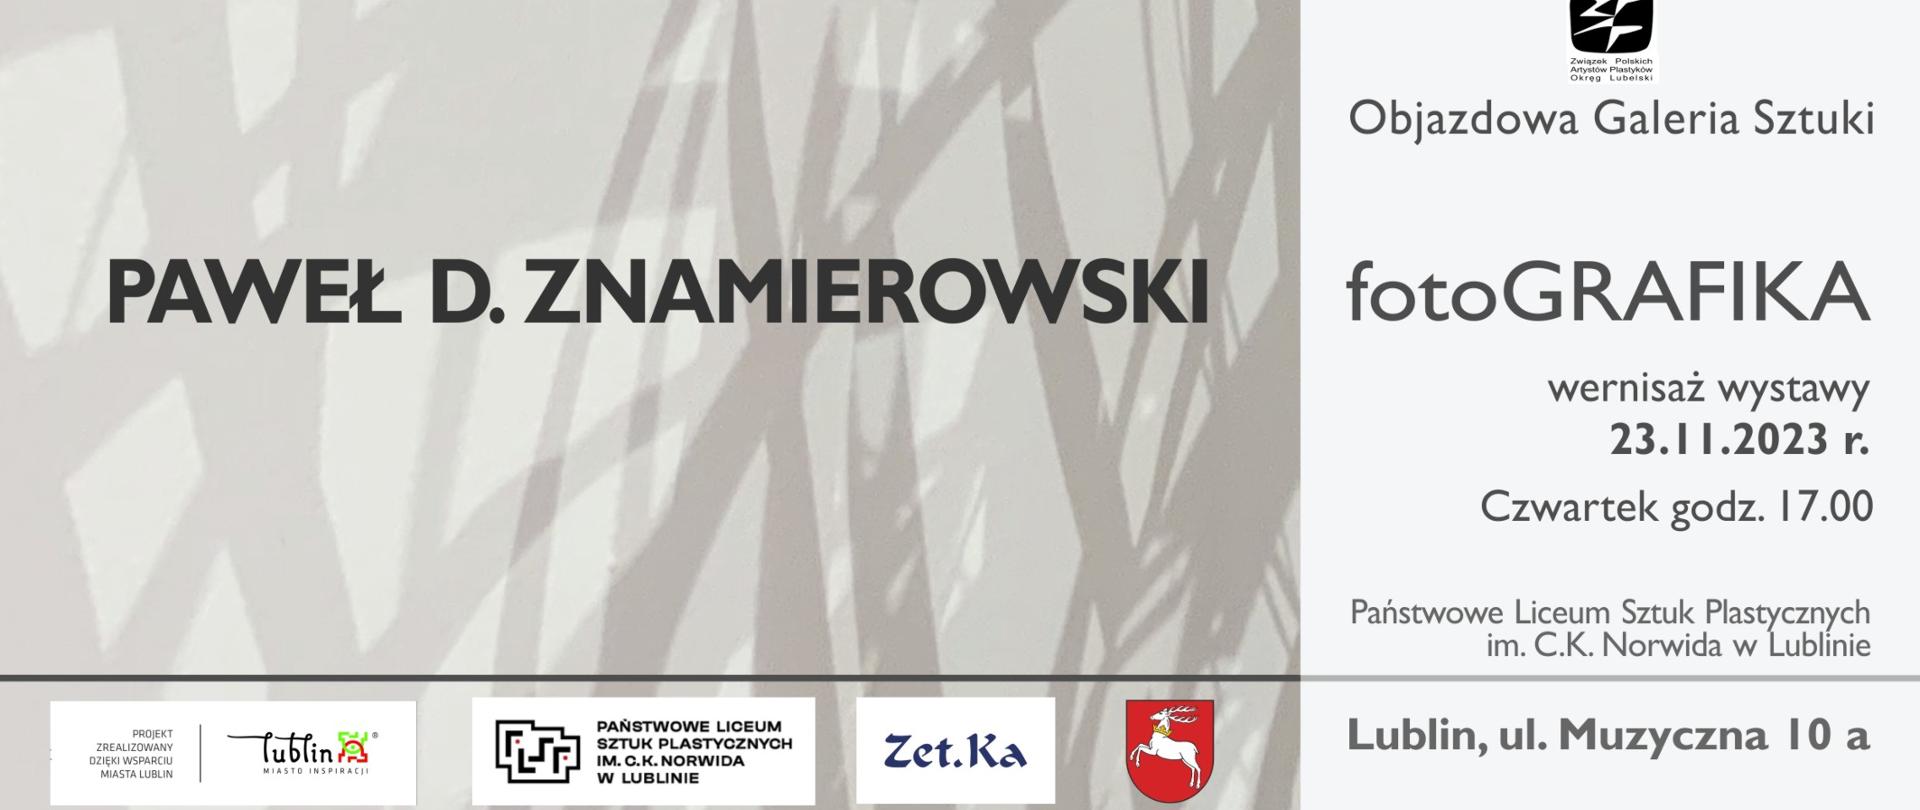 Plakat informujący o wystawie. Napis - czarne litery: "Paweł D. Znamierowski" na jasnoszarym tle na którym są nieregularne ślady ciemniejsze, szare, podobne do pociągnięć pędzlem. Na plakacie informacje o wystawie, takie jak w opisie obok.